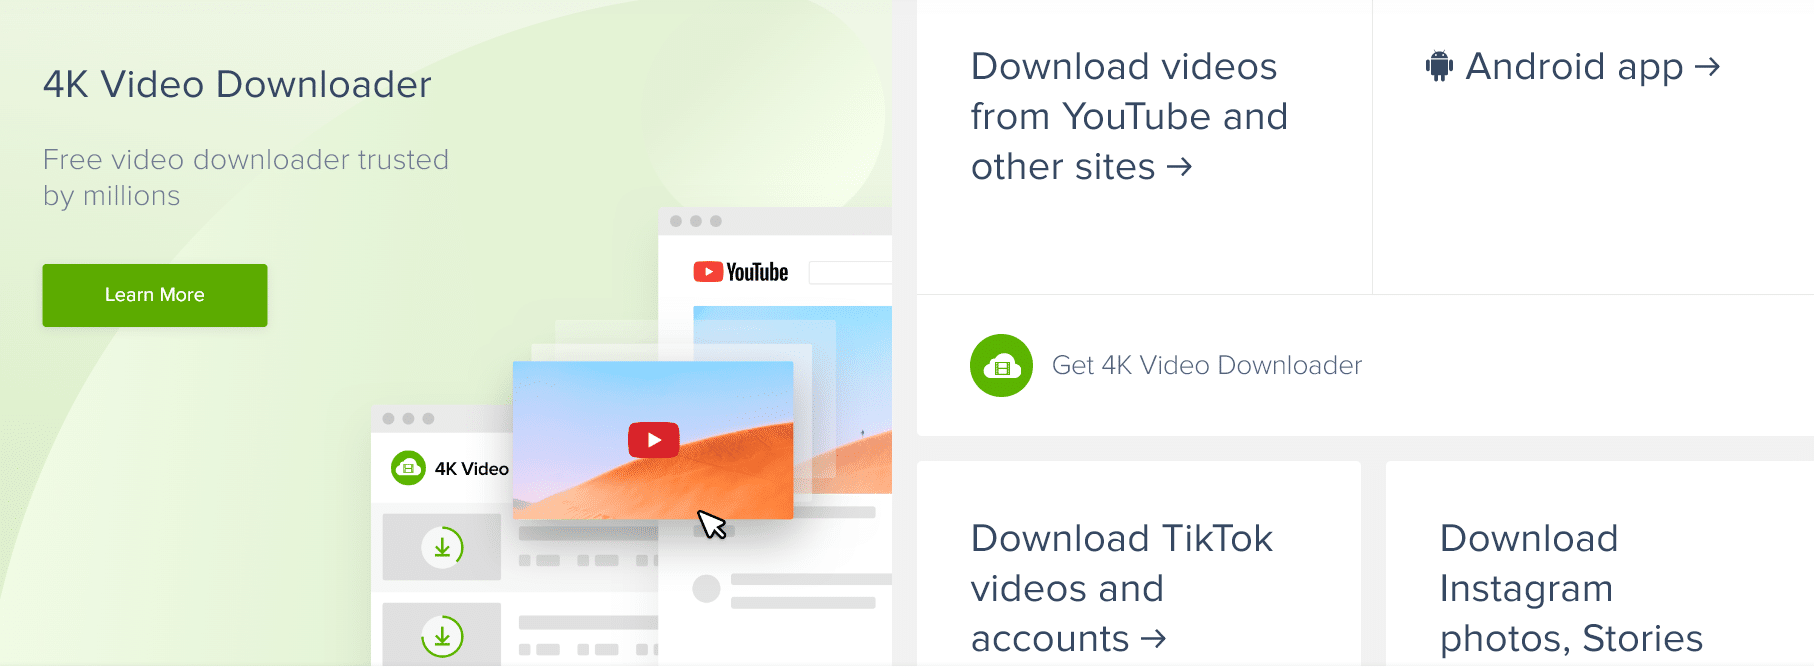 cómo descargar videos de youtube con 4K video downloader